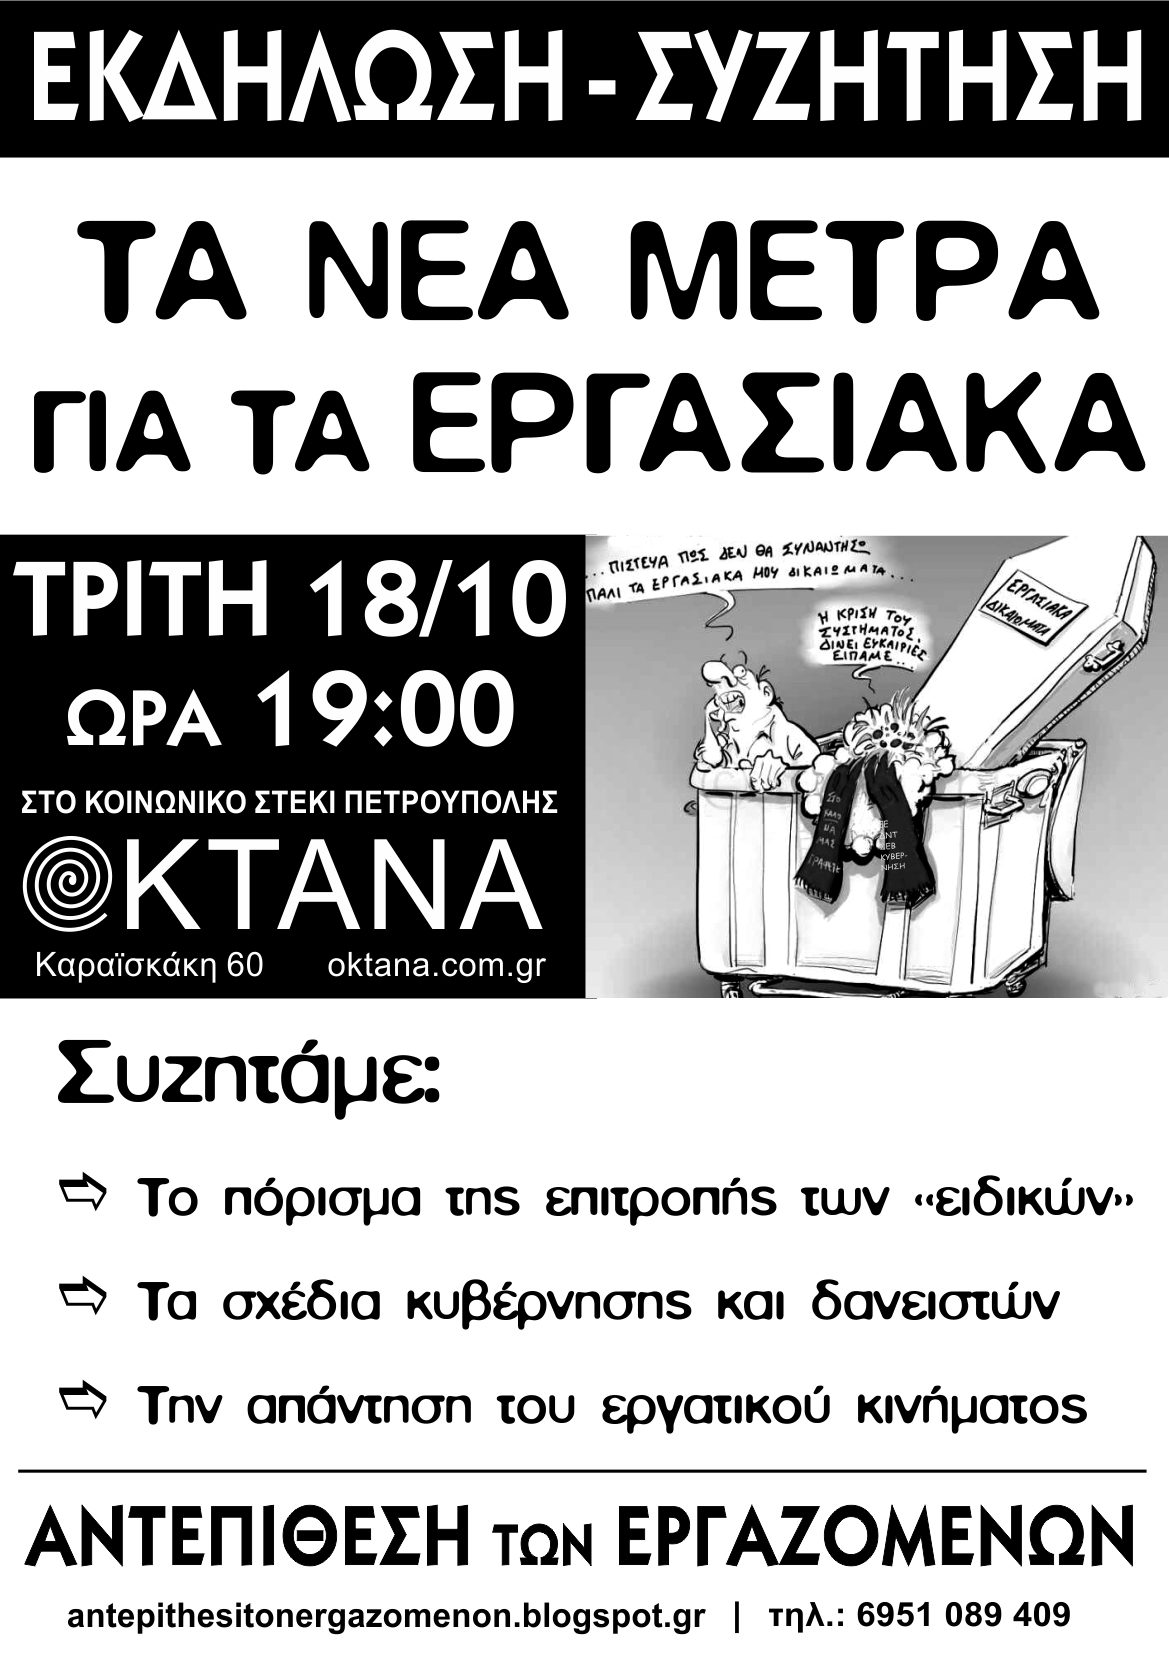 Εκδήλωση της Αντεπίθεσης των Εργαζομένων: “Τα νέα μέτρα για τα εγρασιακά”. Τρίτη 18/10 στο κοινωνικό στέκι ΟΚΤΑΝΑ στην Πετρούπολη